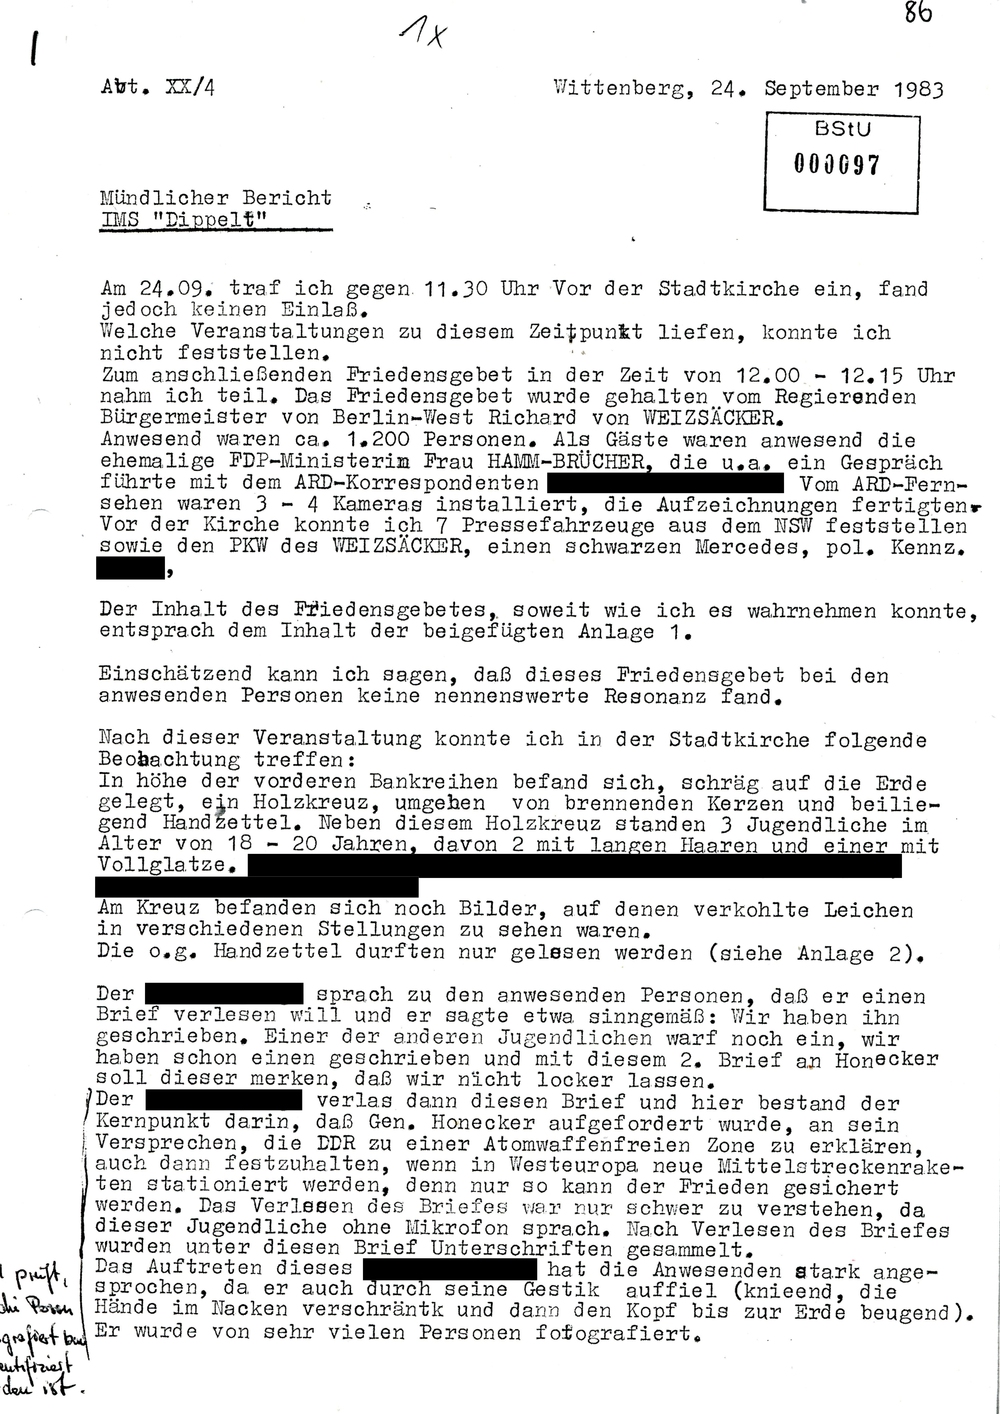 Bericht IMS "Dippelt" über den Kirchentag in Wittenberg 1983 | Mediathek des Stasi-Unterlagen-Archivs